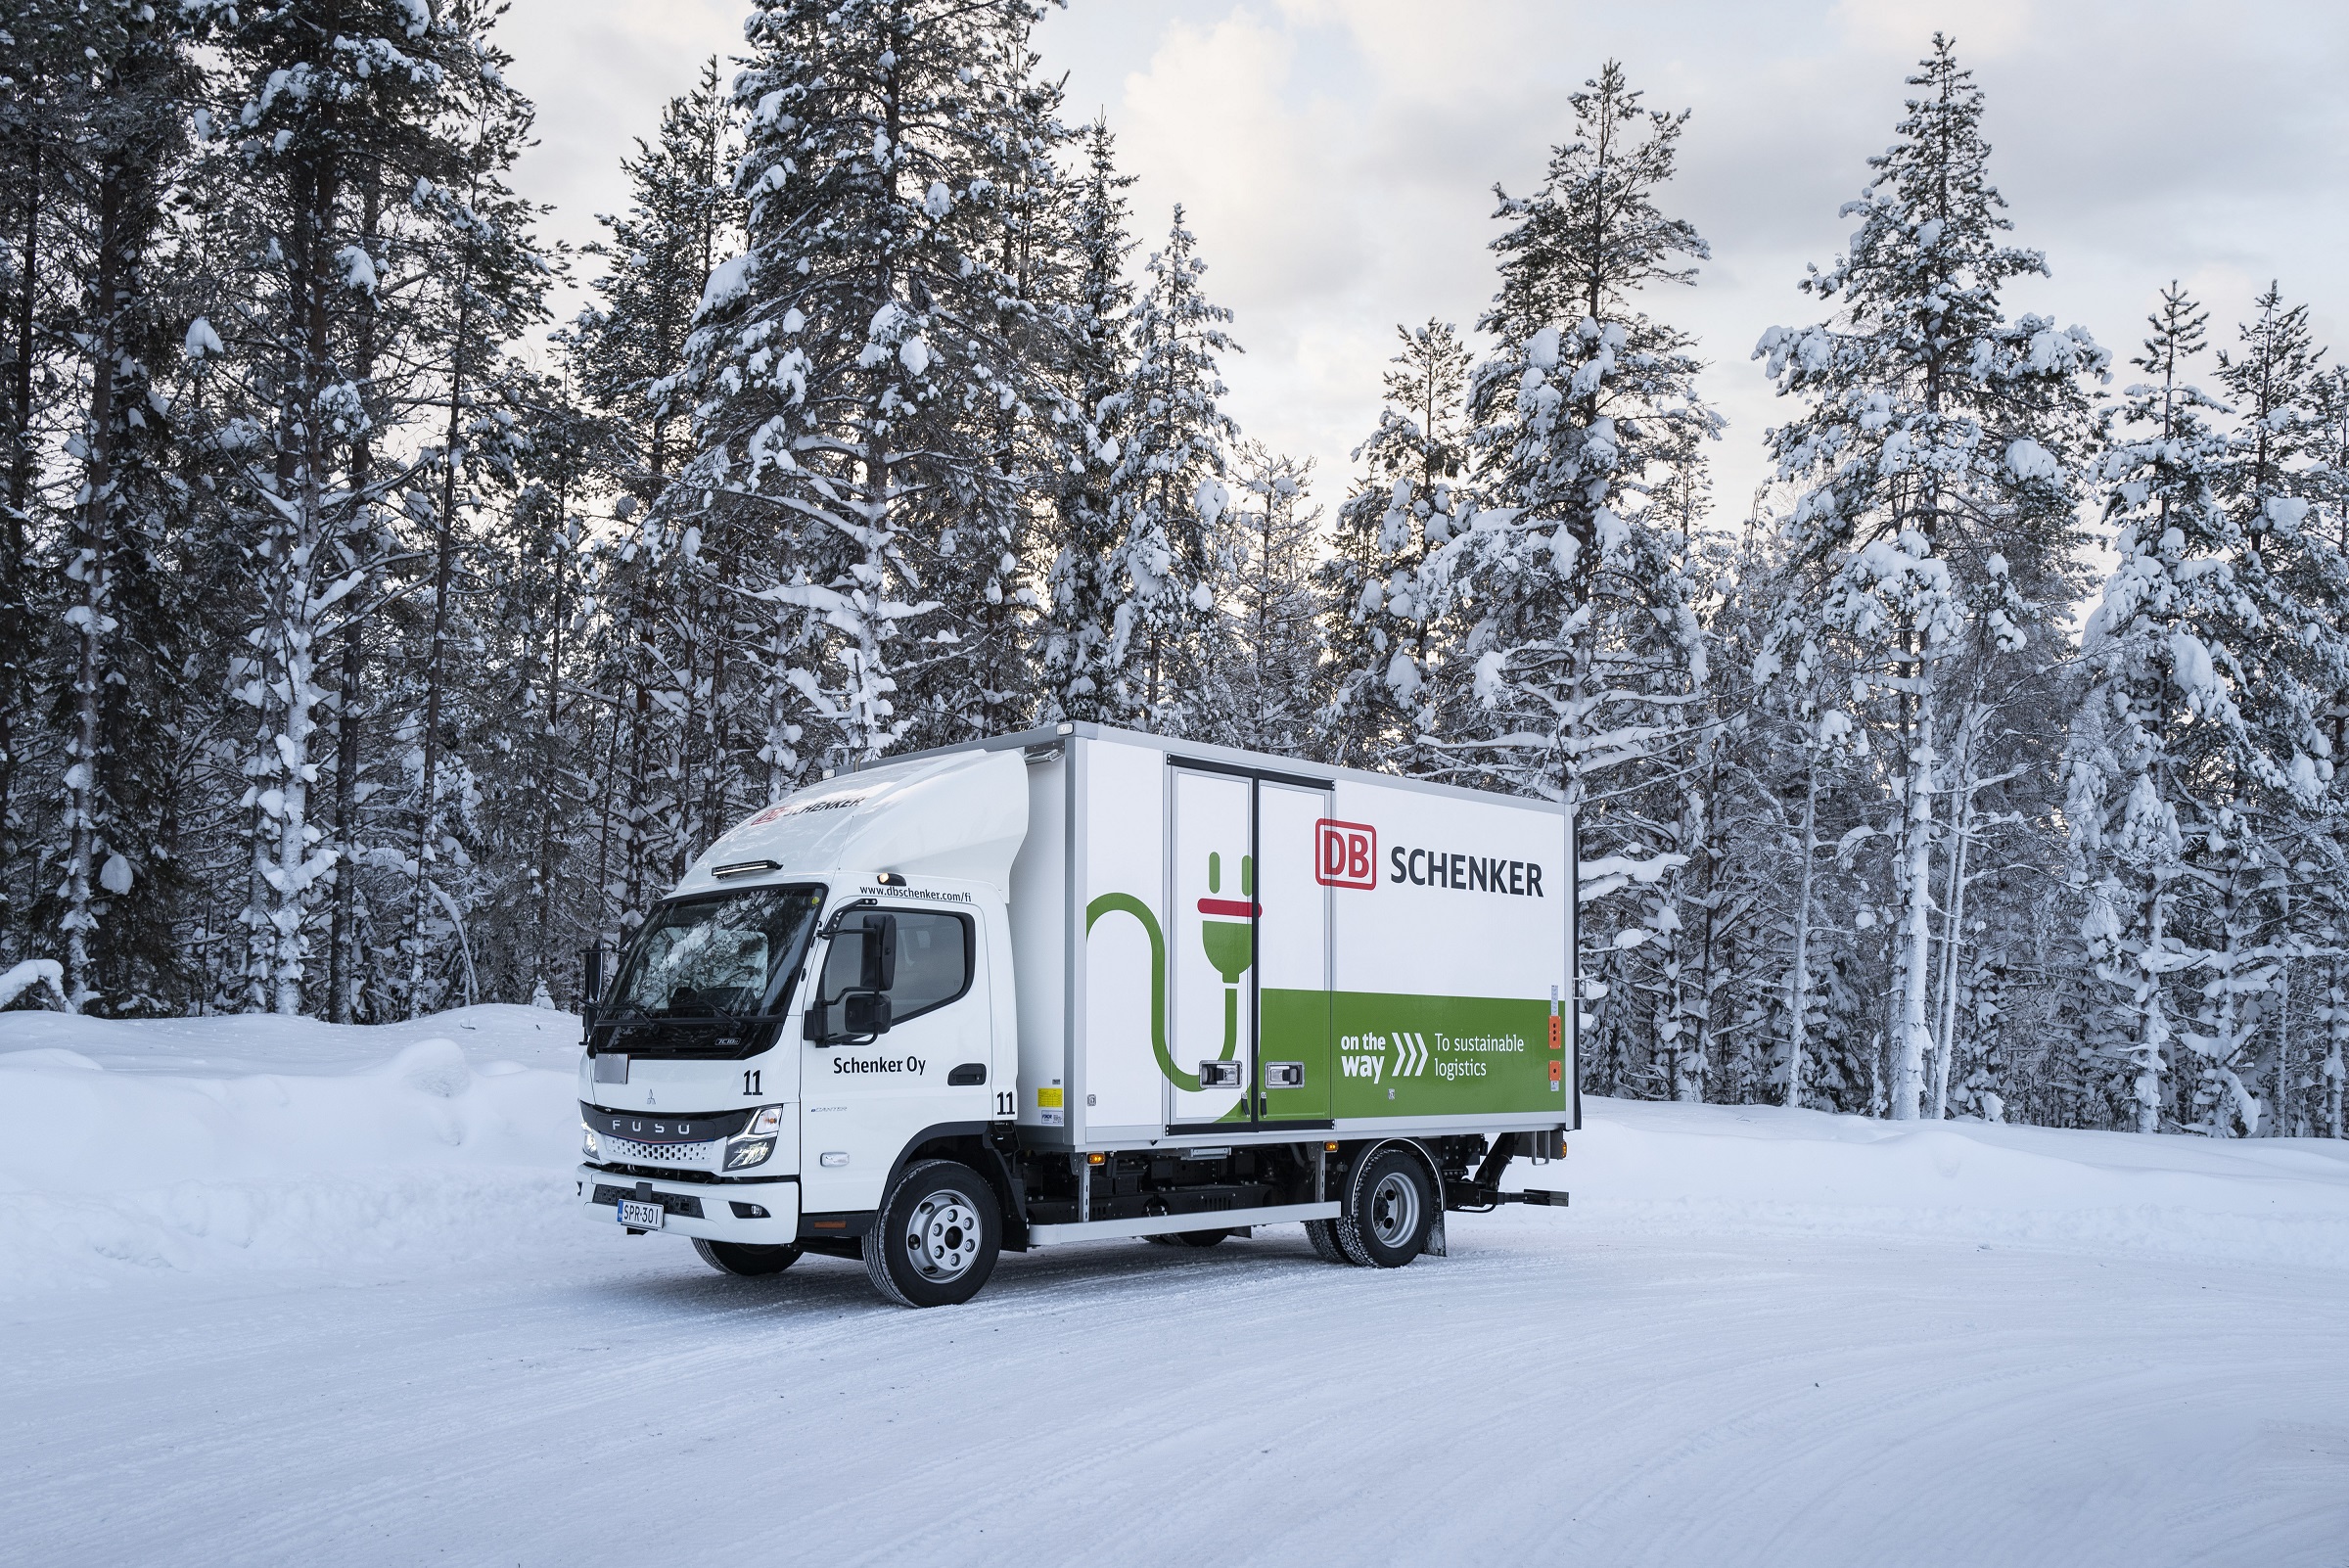 フィンランド北部でDBシェンカーが「eCanter」を導入し、寒冷地での性能を実証